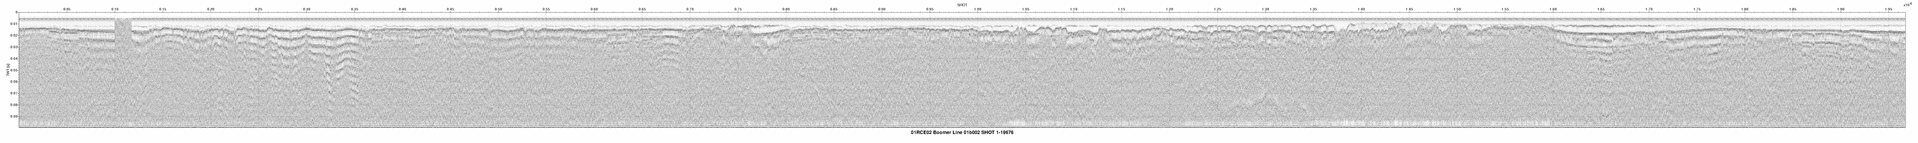 01RCE02-01b002 seismic profile thumbnail